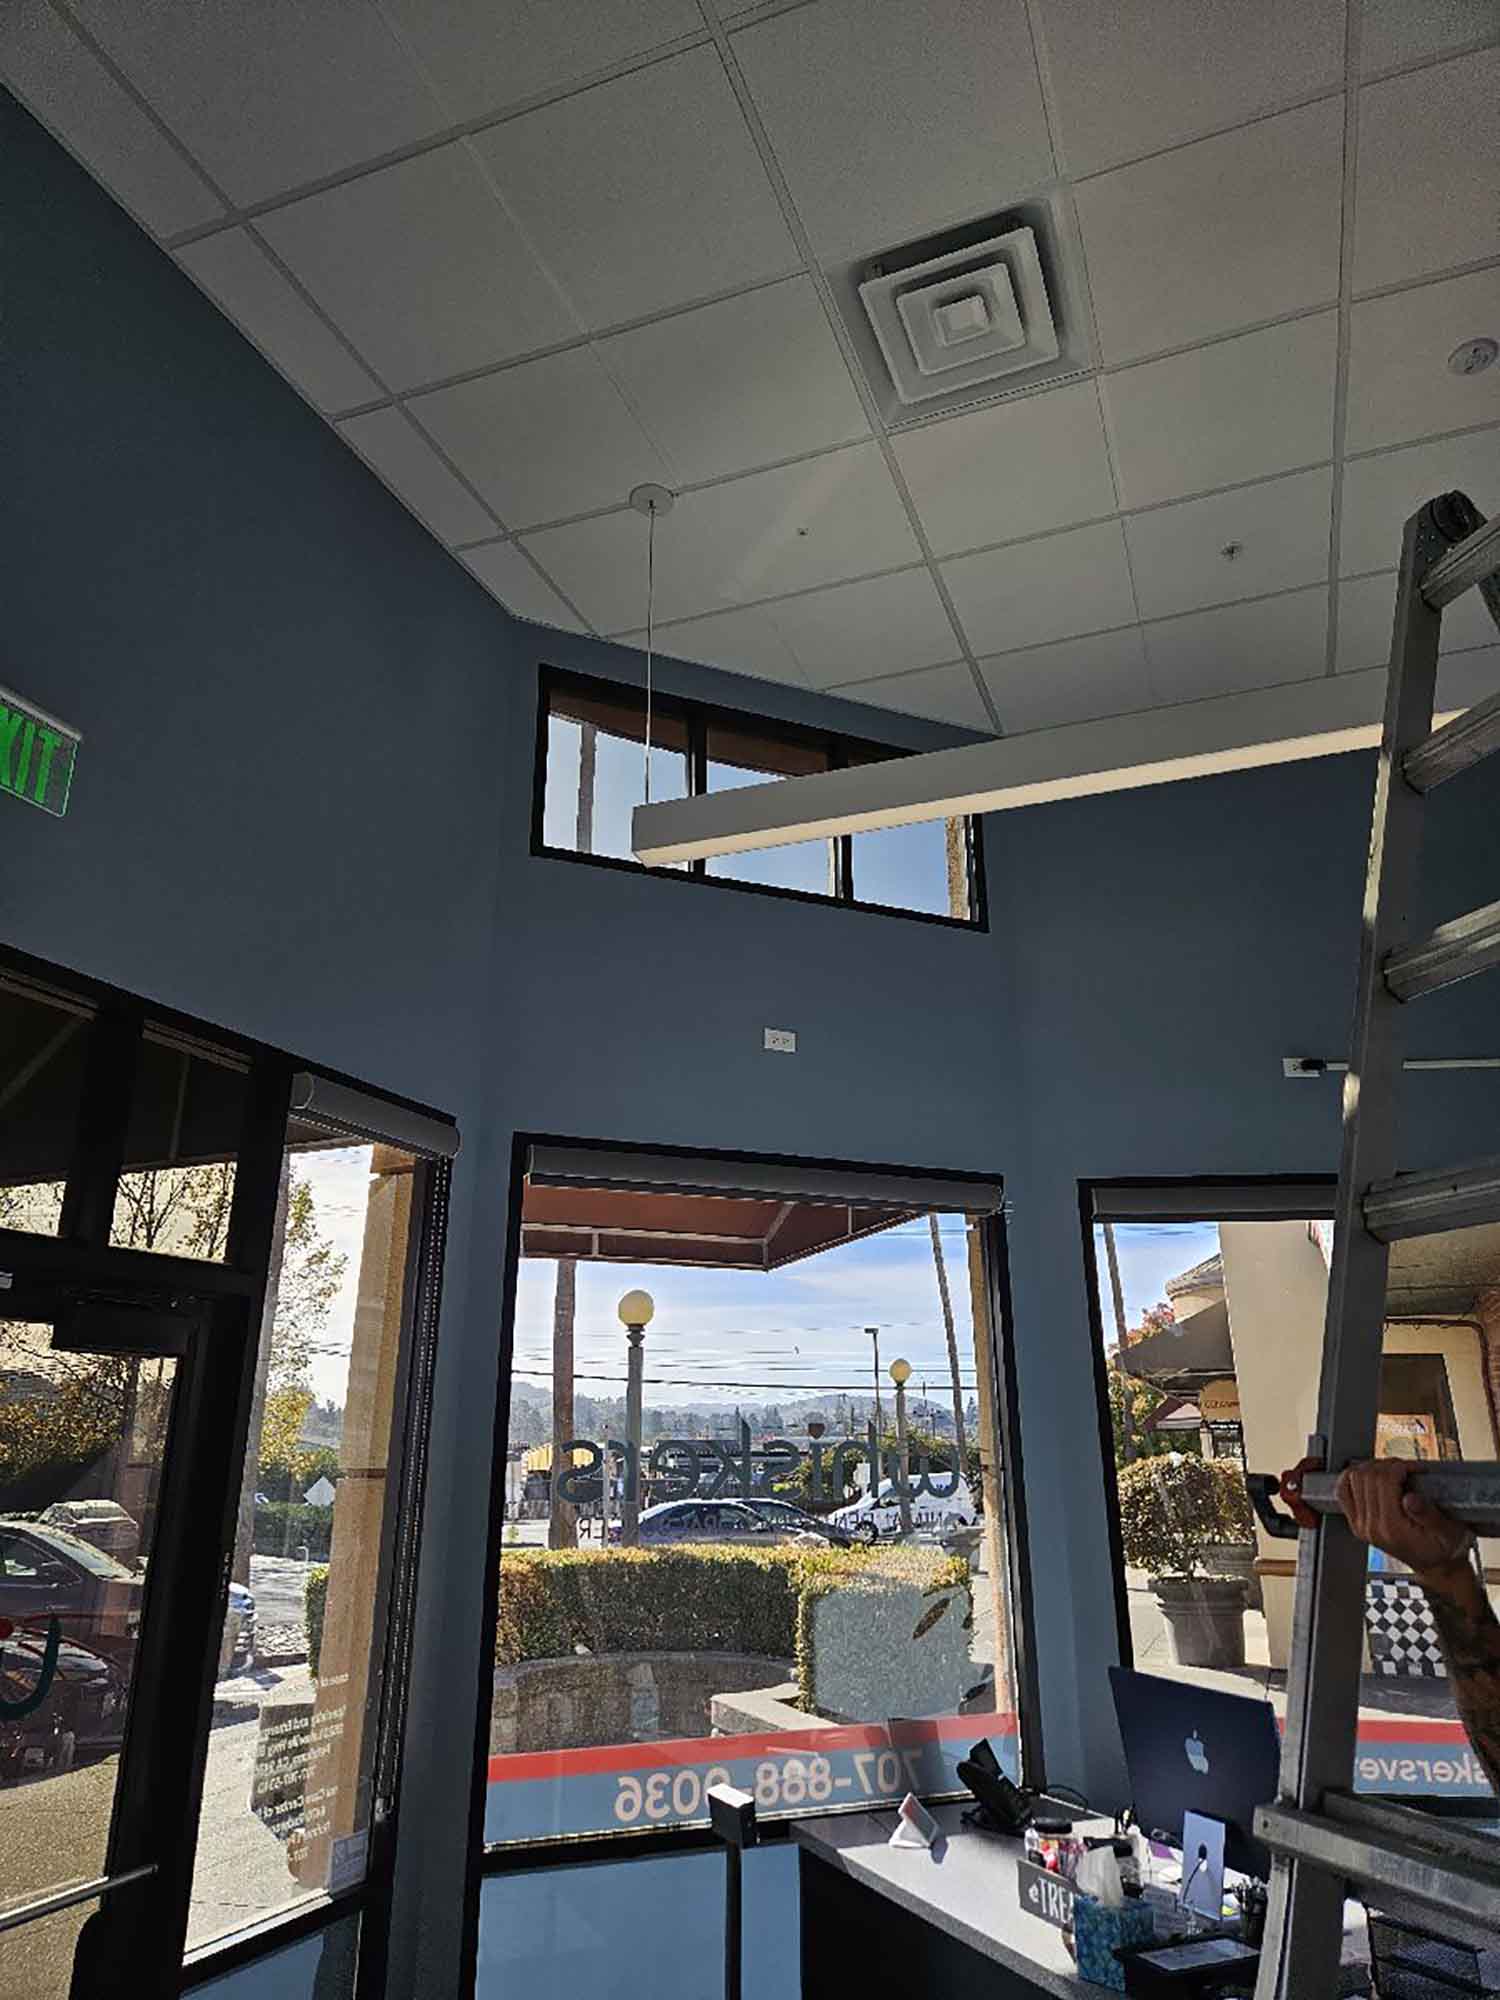 ClimatePro Installs 3M Sun Control Window Film For A Petaluma Animal Care Office